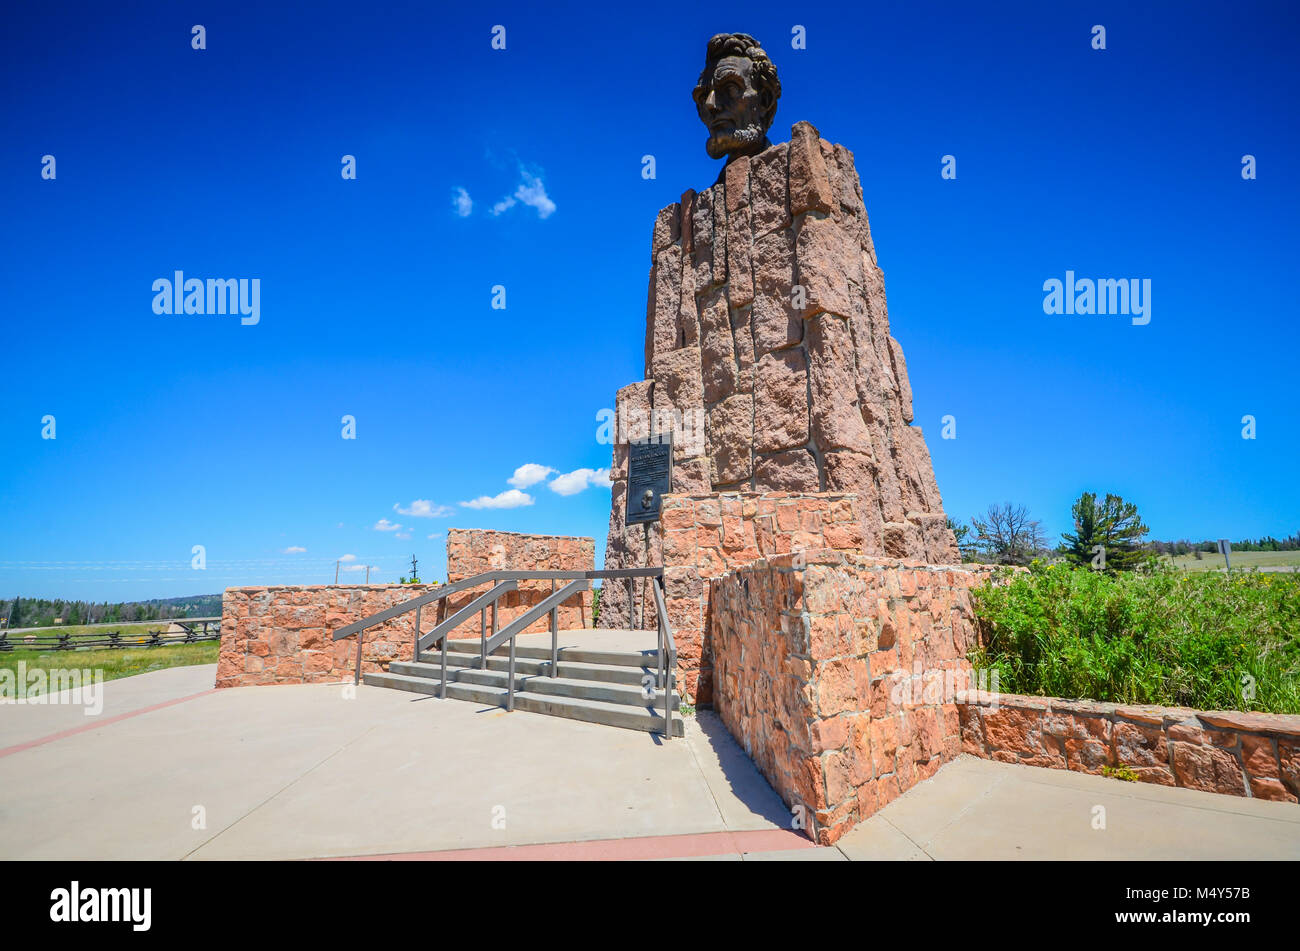 Horizontale Bild des Abraham Lincoln Denkmal in Laramie, Wyoming. Es war ursprünglich auf dem höchsten Punkt auf den transkontinentalen L platziert Stockfoto